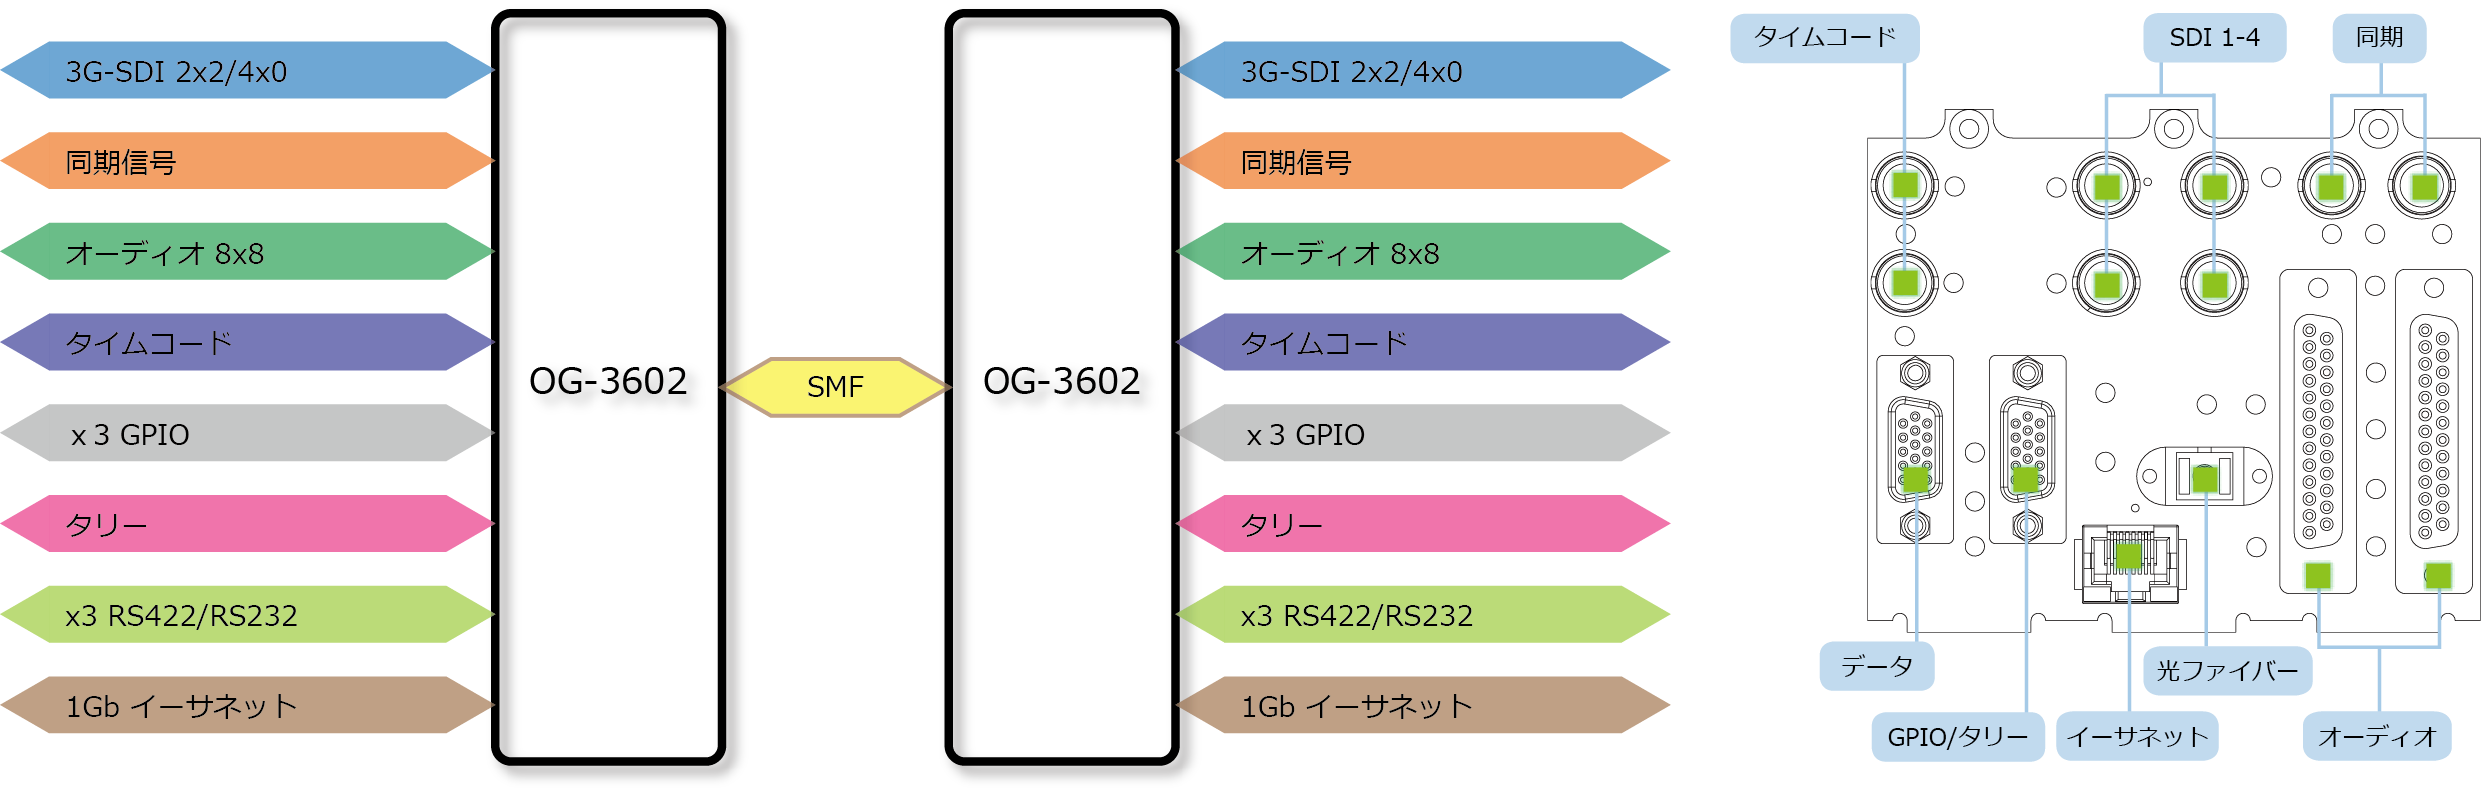 OG-3602 ブロック図/リアパネル図